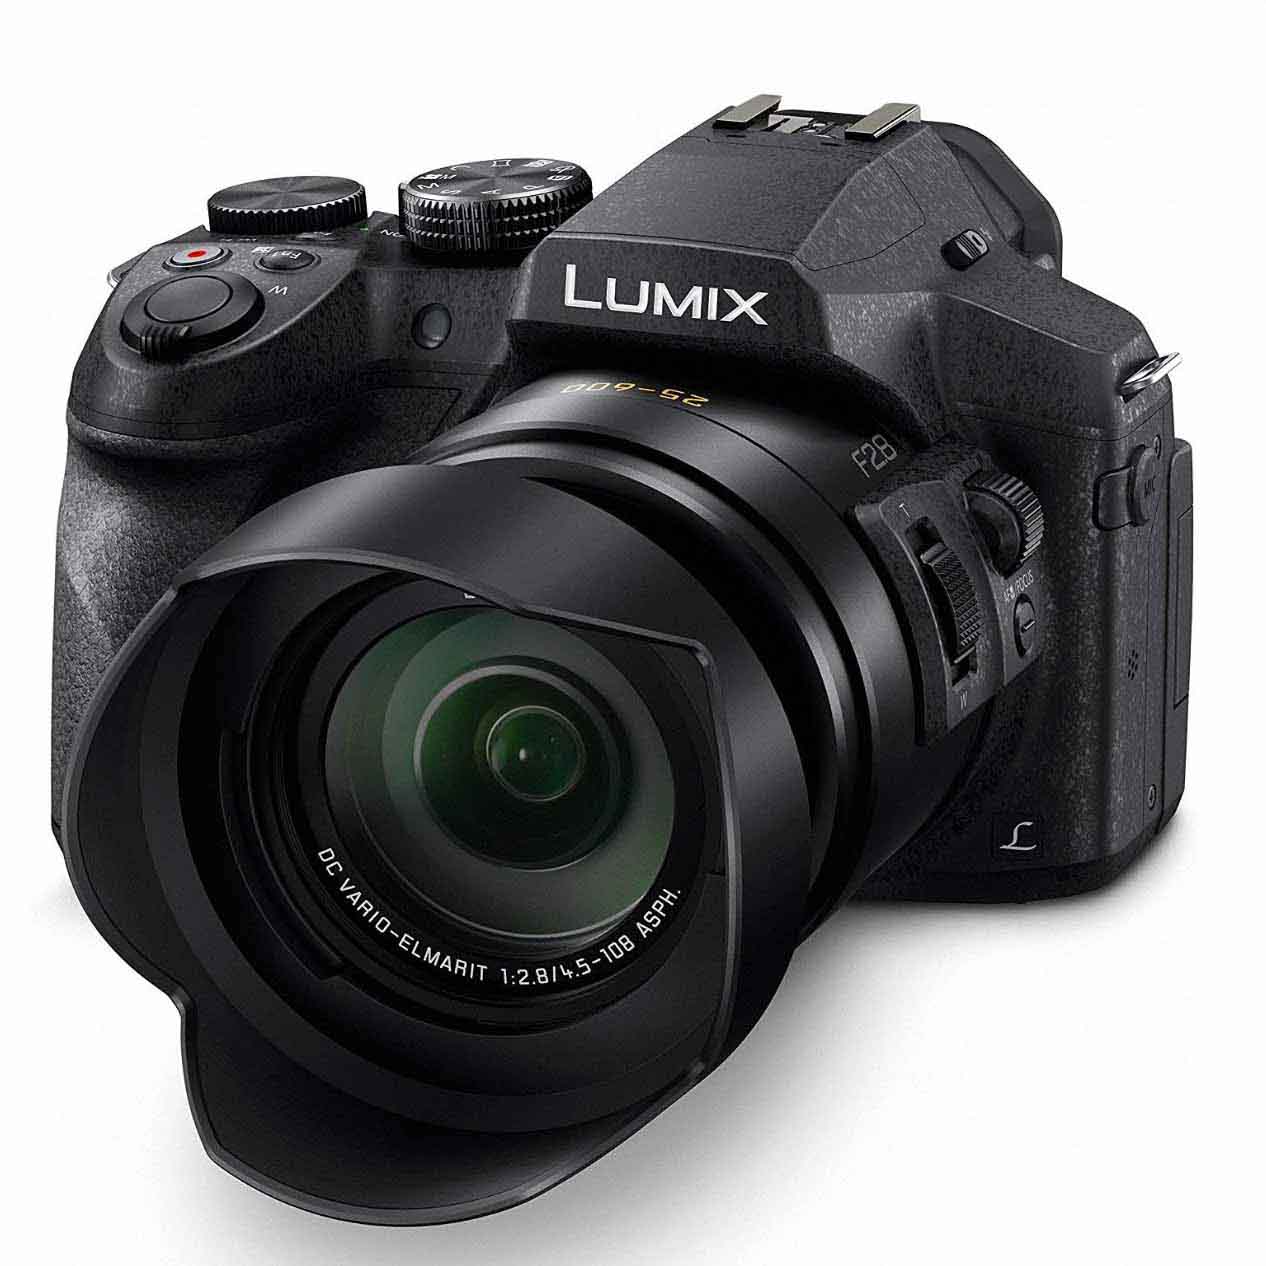 Lumix digital camera in black